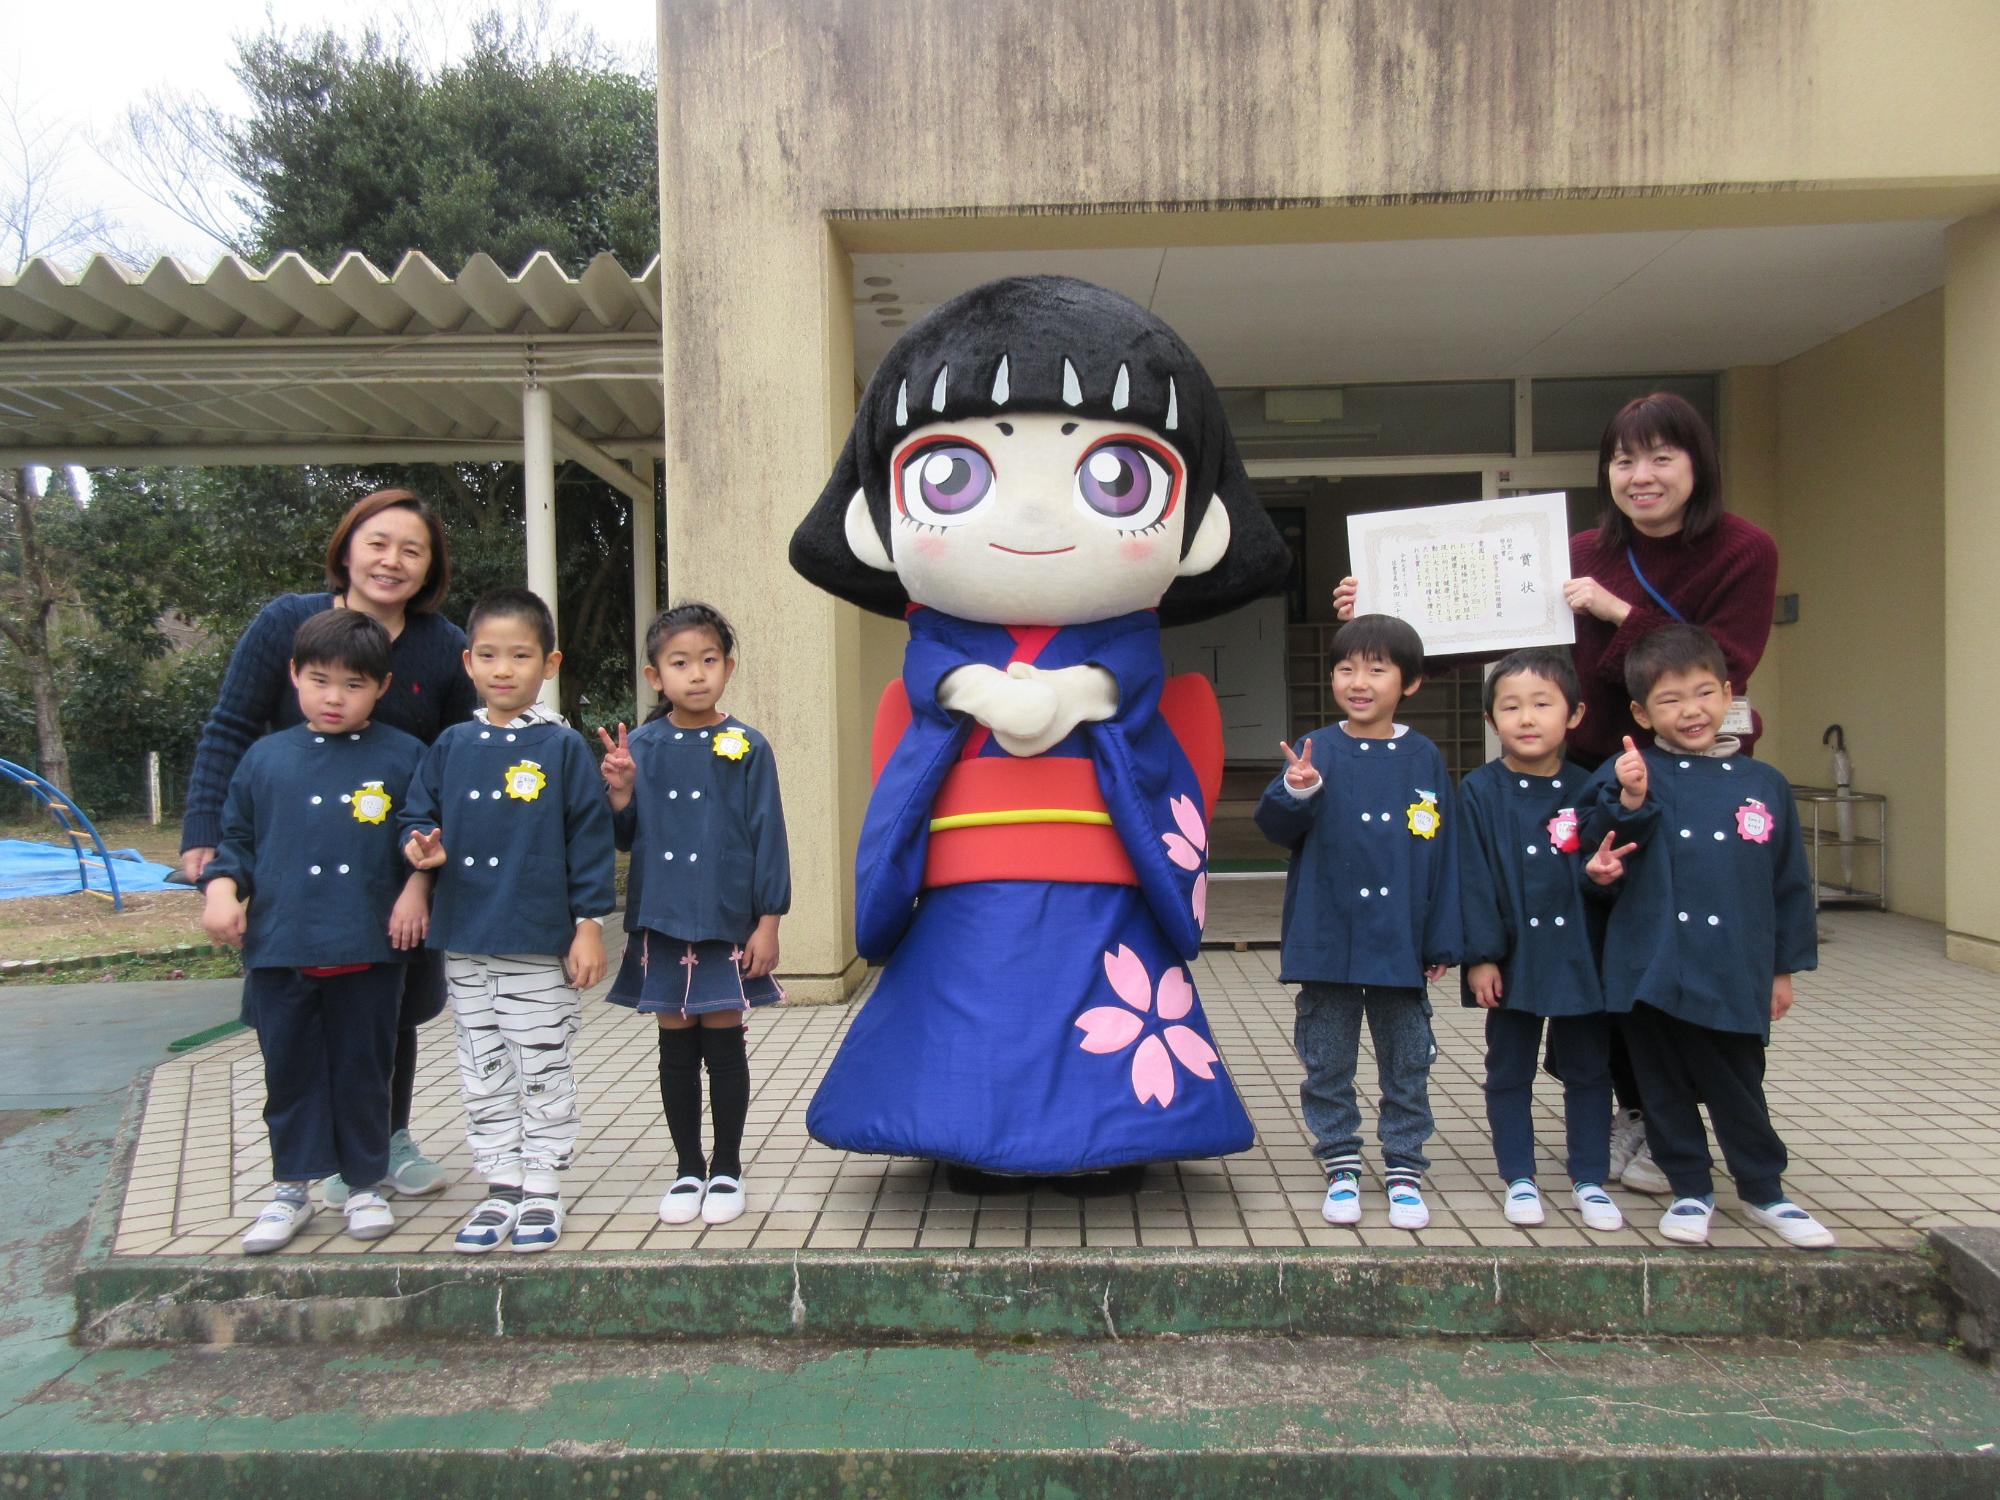 カムロちゃんの着ぐるみとピースをした園児たちが並んでいる記念写真